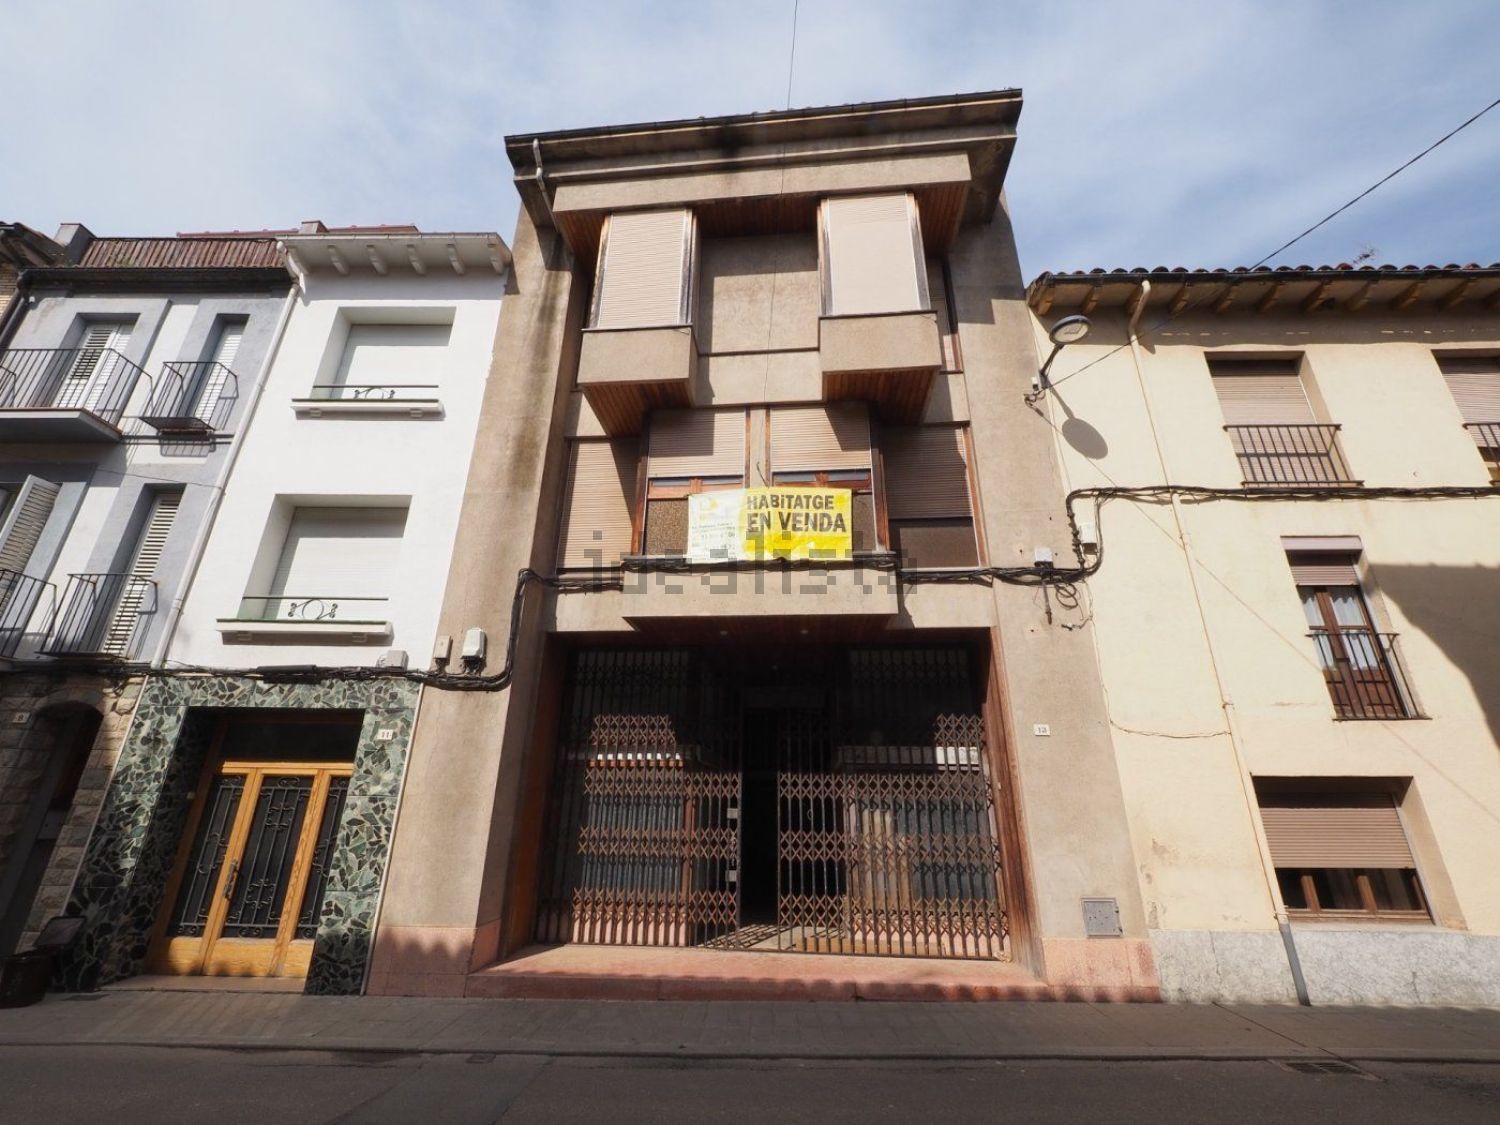 Casa en Prats de Lluçanès. Casa en venta en prats de lluçanès (barcelona) major